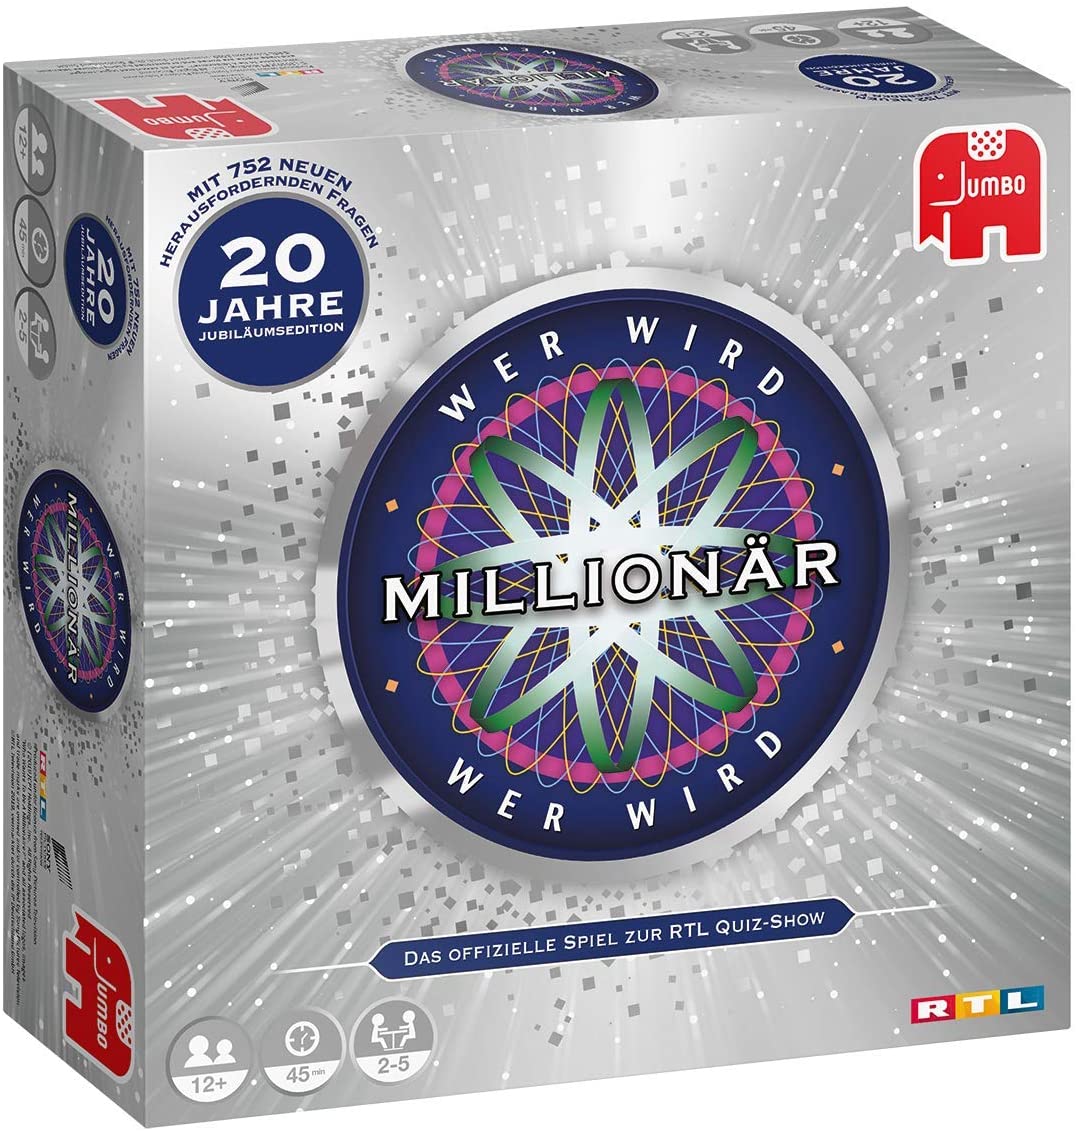 Wer wird Millionär 20 Jahre (Jumbo 19736) - Spiel